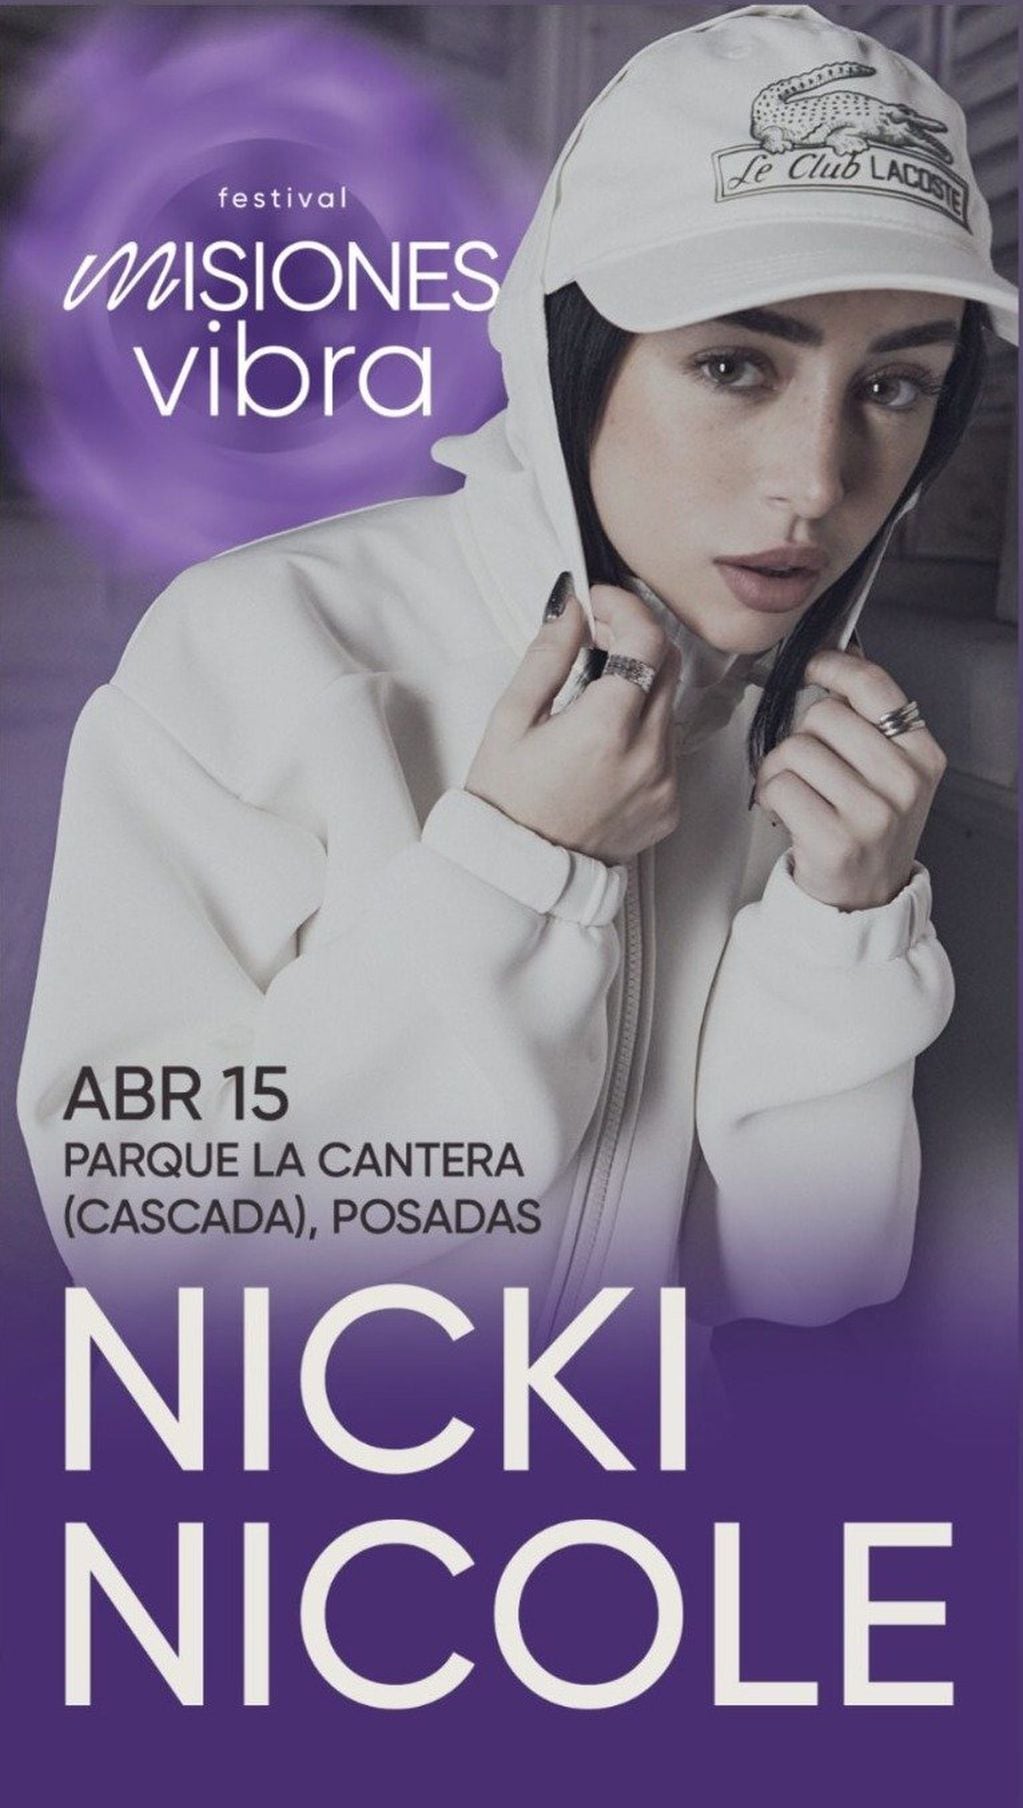 Nicki Nicole dará un show gratis en Posadas, Misiones